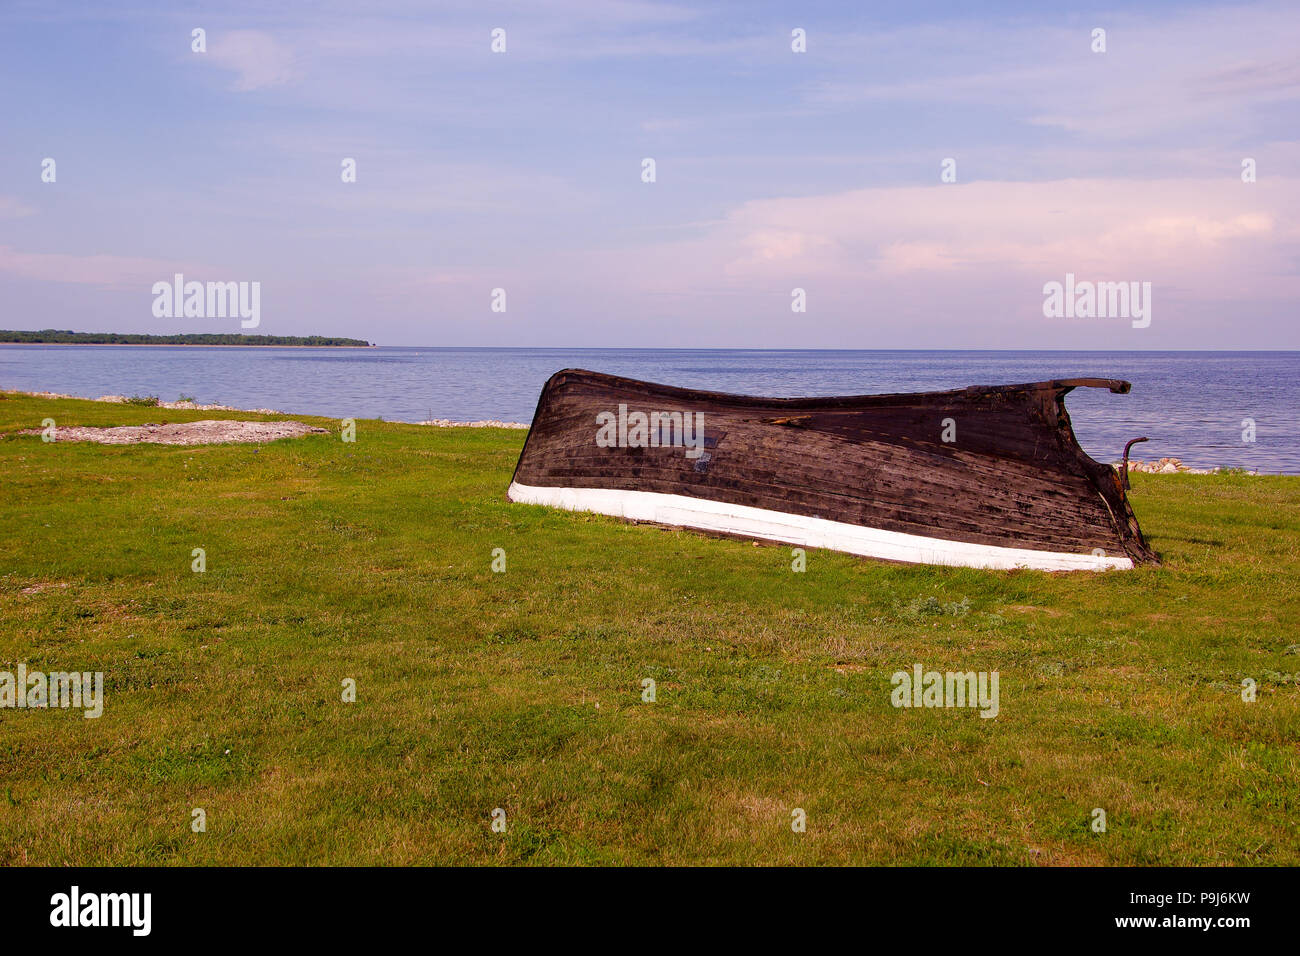 Bateau de pêche en bois goudronné traditionnel sur l'île de Saaremaa dans l'ouest de l'Estonie, où les gens ont mené pendant des siècles la vie simple Banque D'Images